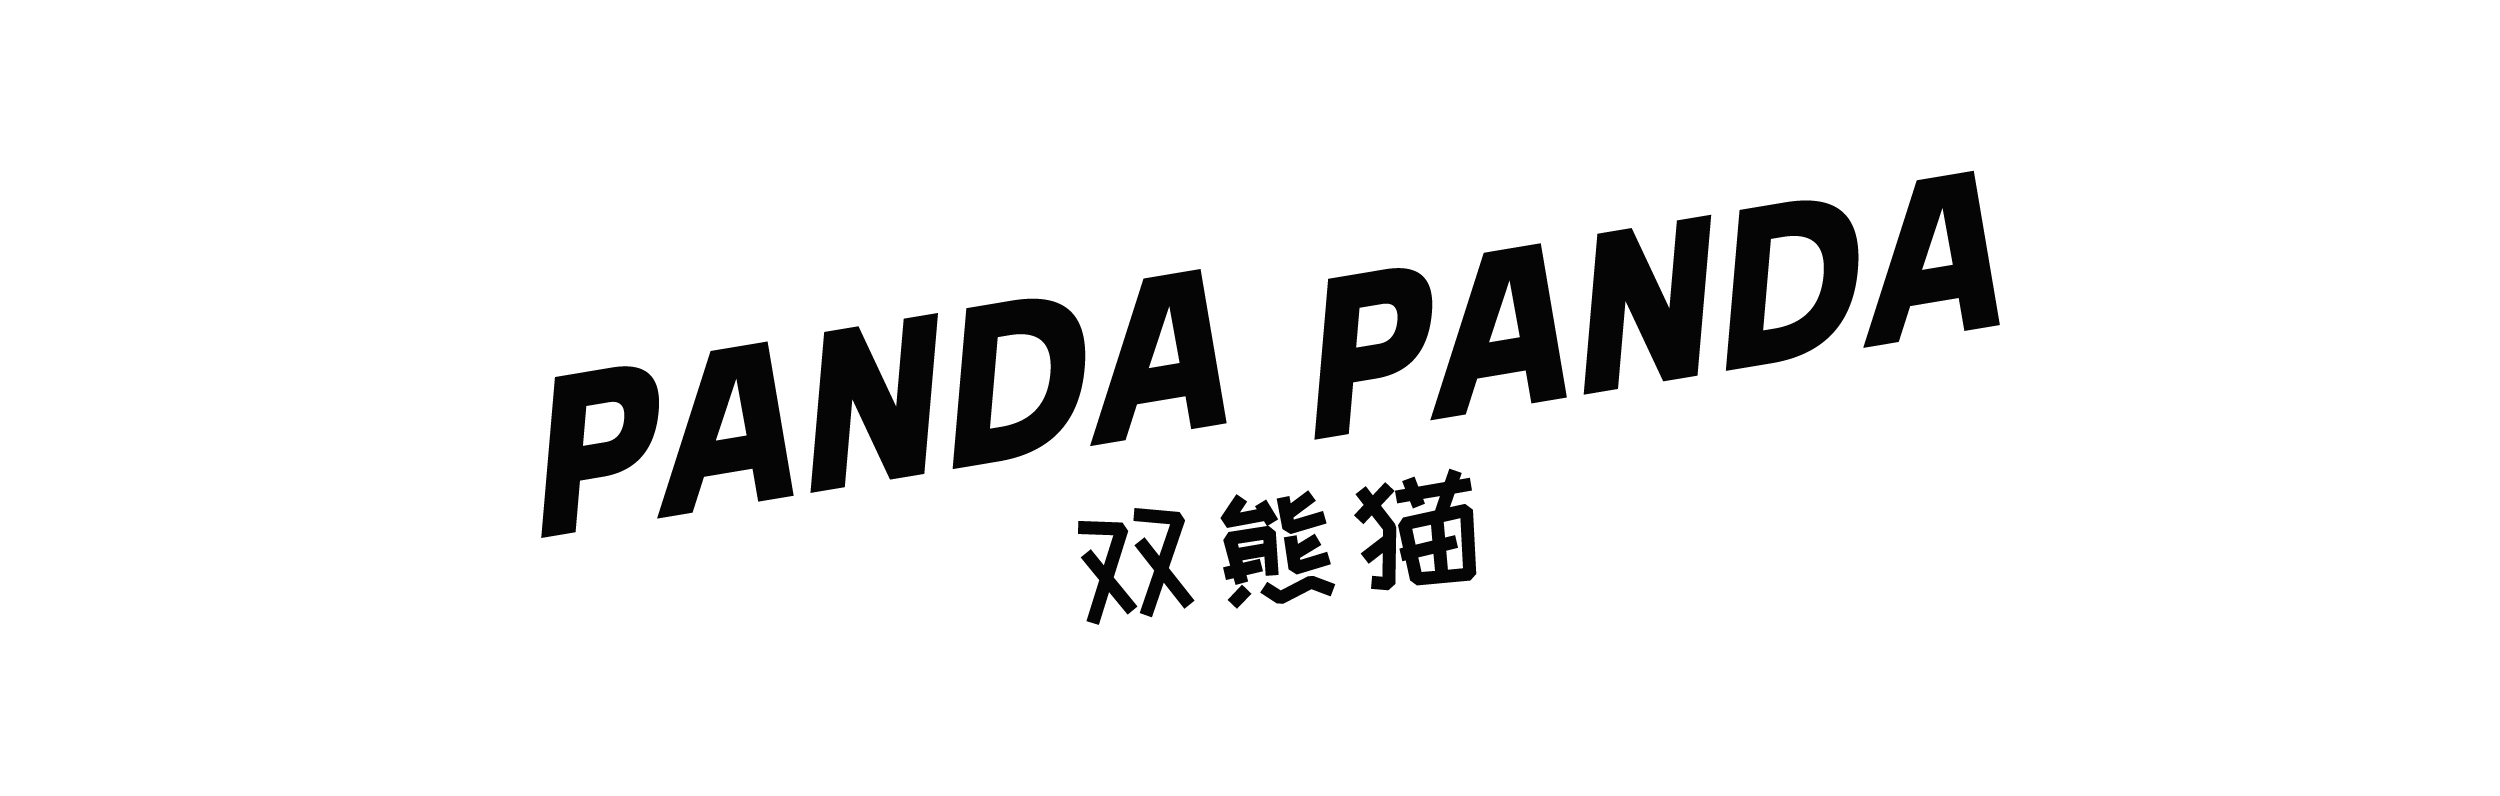 Panda Panda Logo